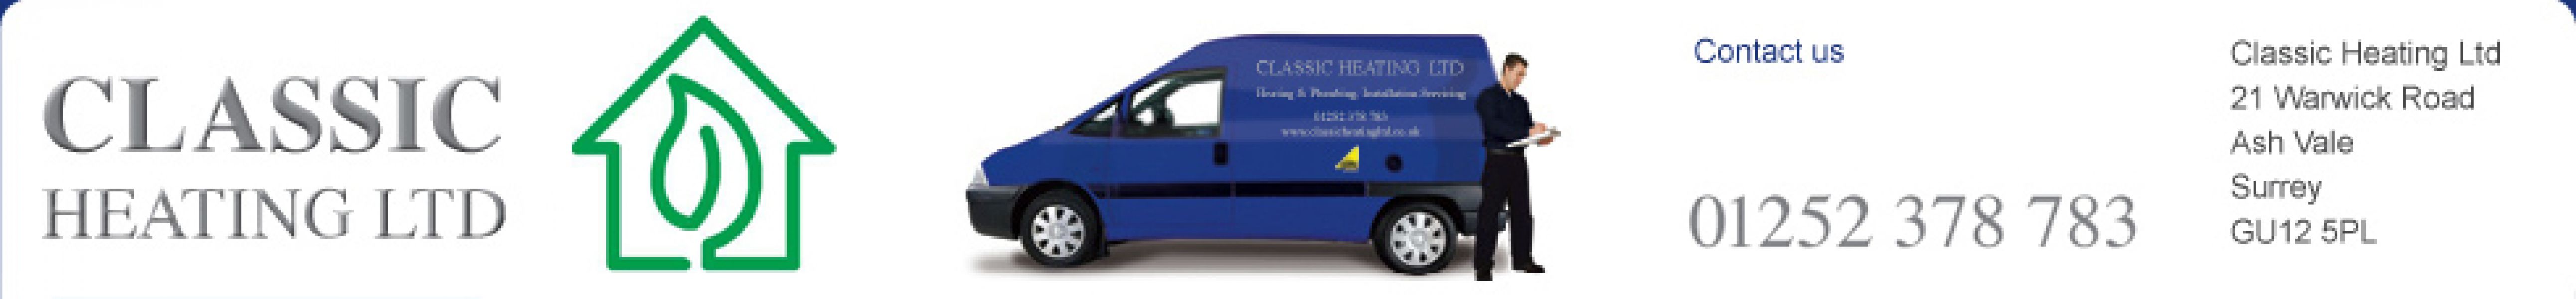 Urgent Boiler Services & Repairs in Basingstoke- Classic Heating Ltd